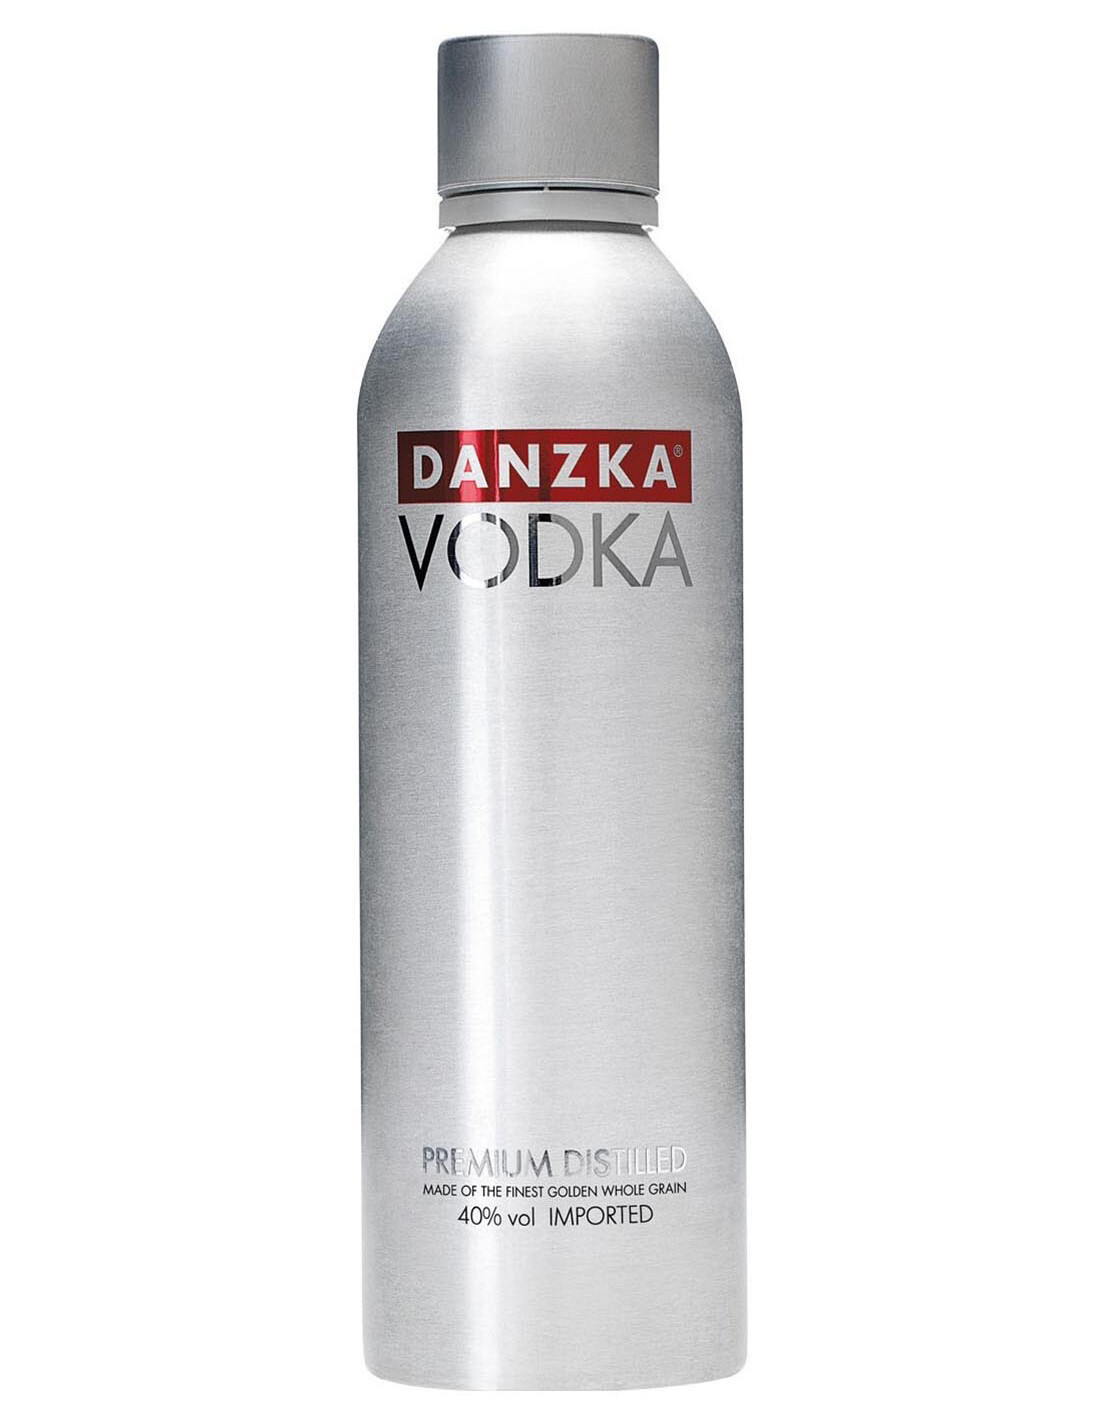 Danzka Vodka Premium Distilled 